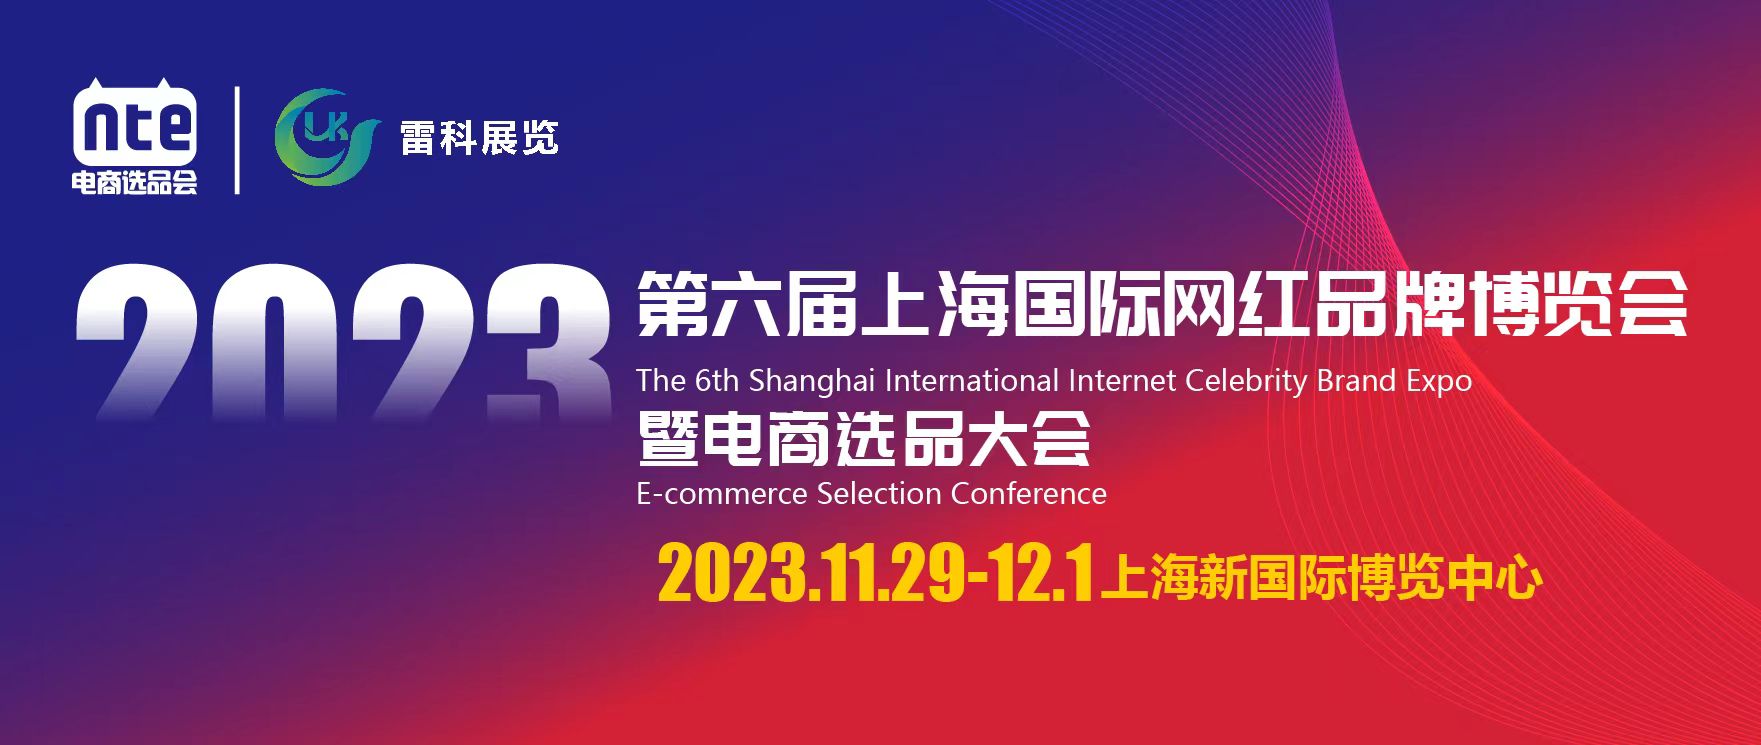 2023第六届上海国际网红品牌博览会暨华东电商选品大会